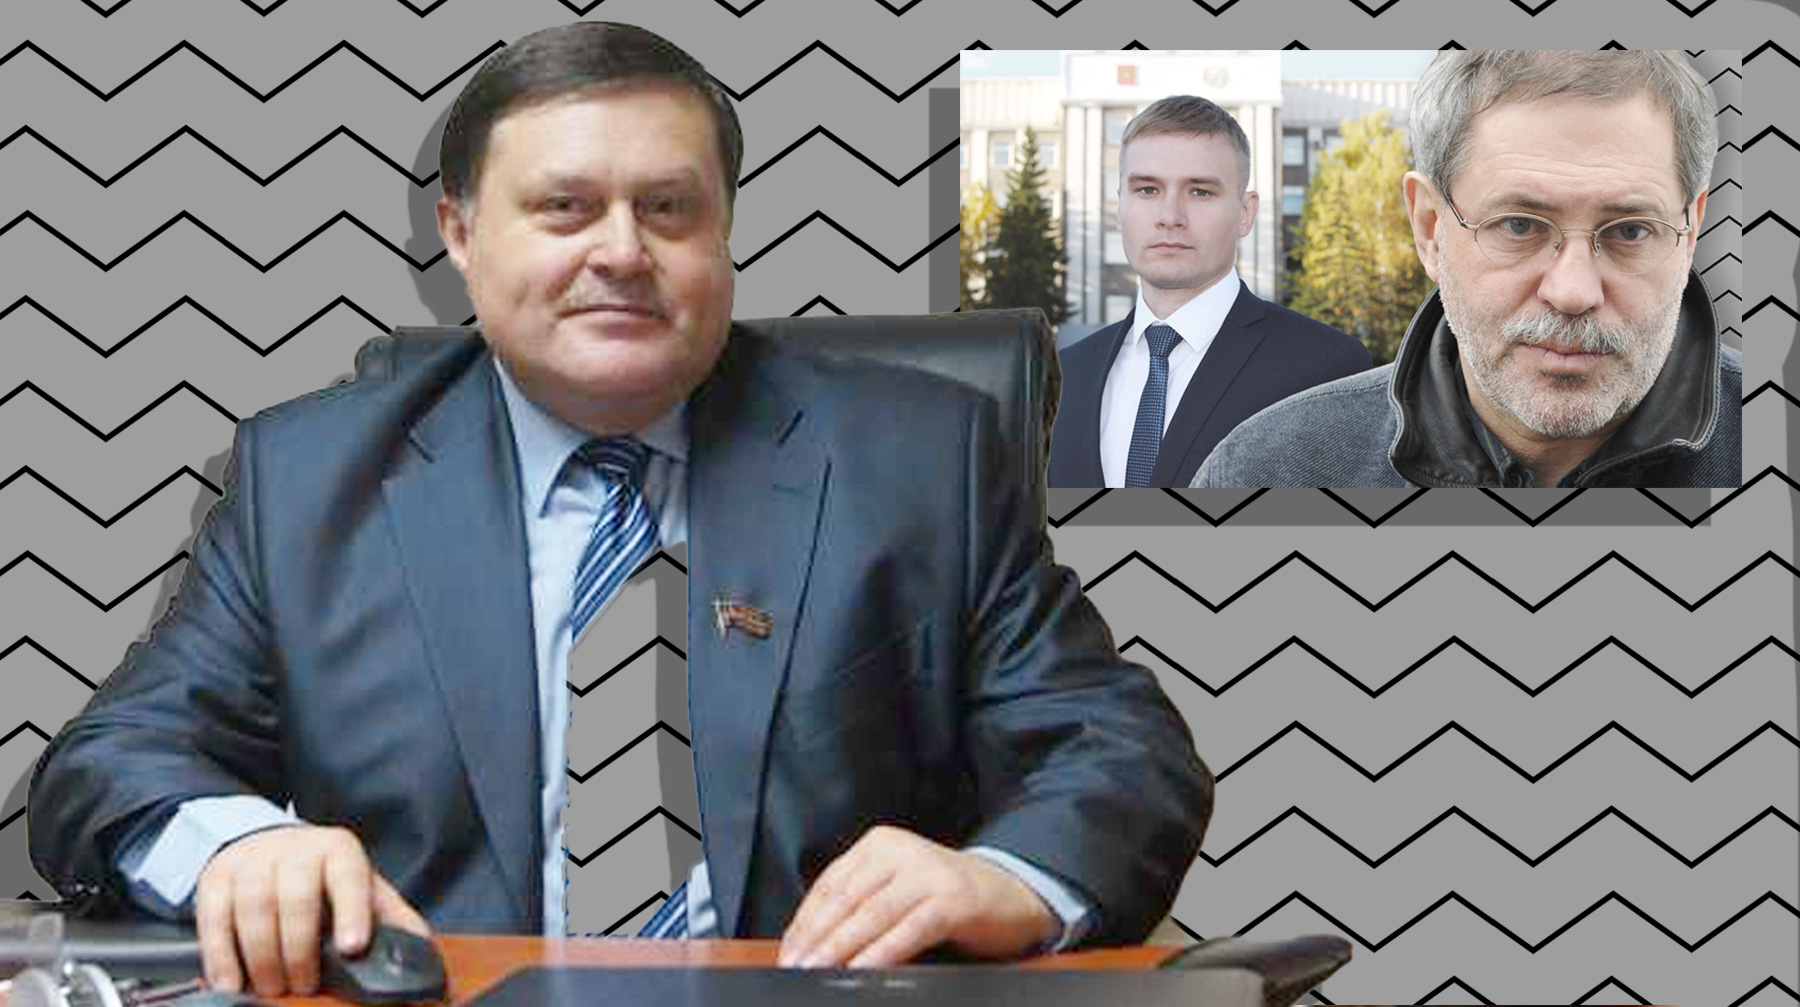 Пресс-секретарь «Роснефти» оскорбил главу Хакасии «не от большого ума», считает глава юридической службы партии Коллаж: © Daily Storm